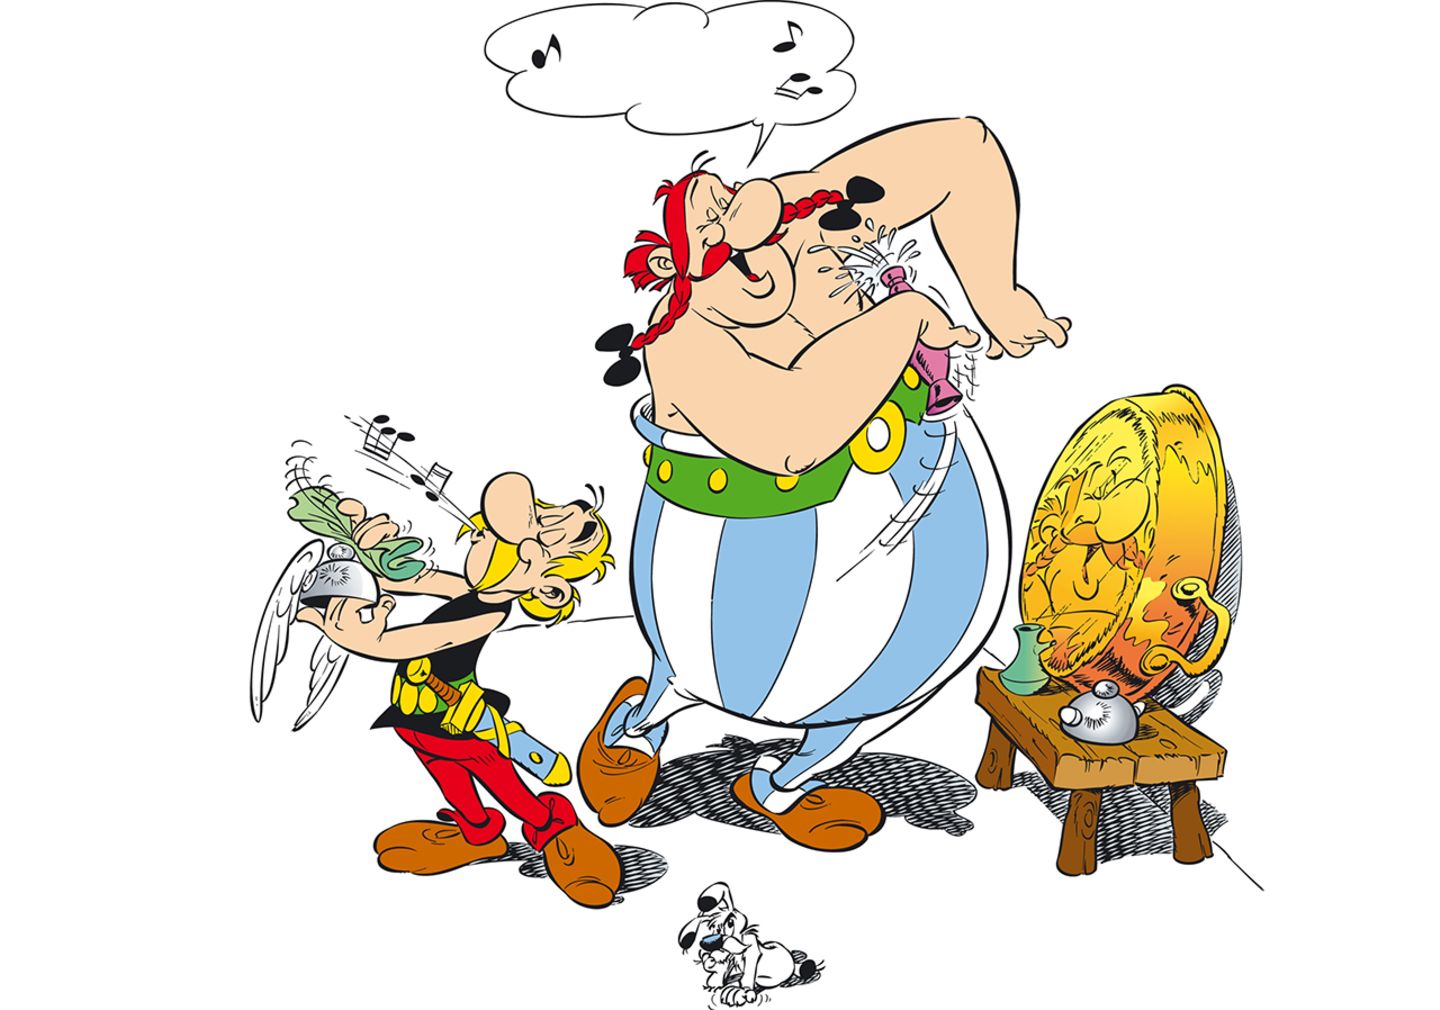 Asterix und Obelix waschen sich